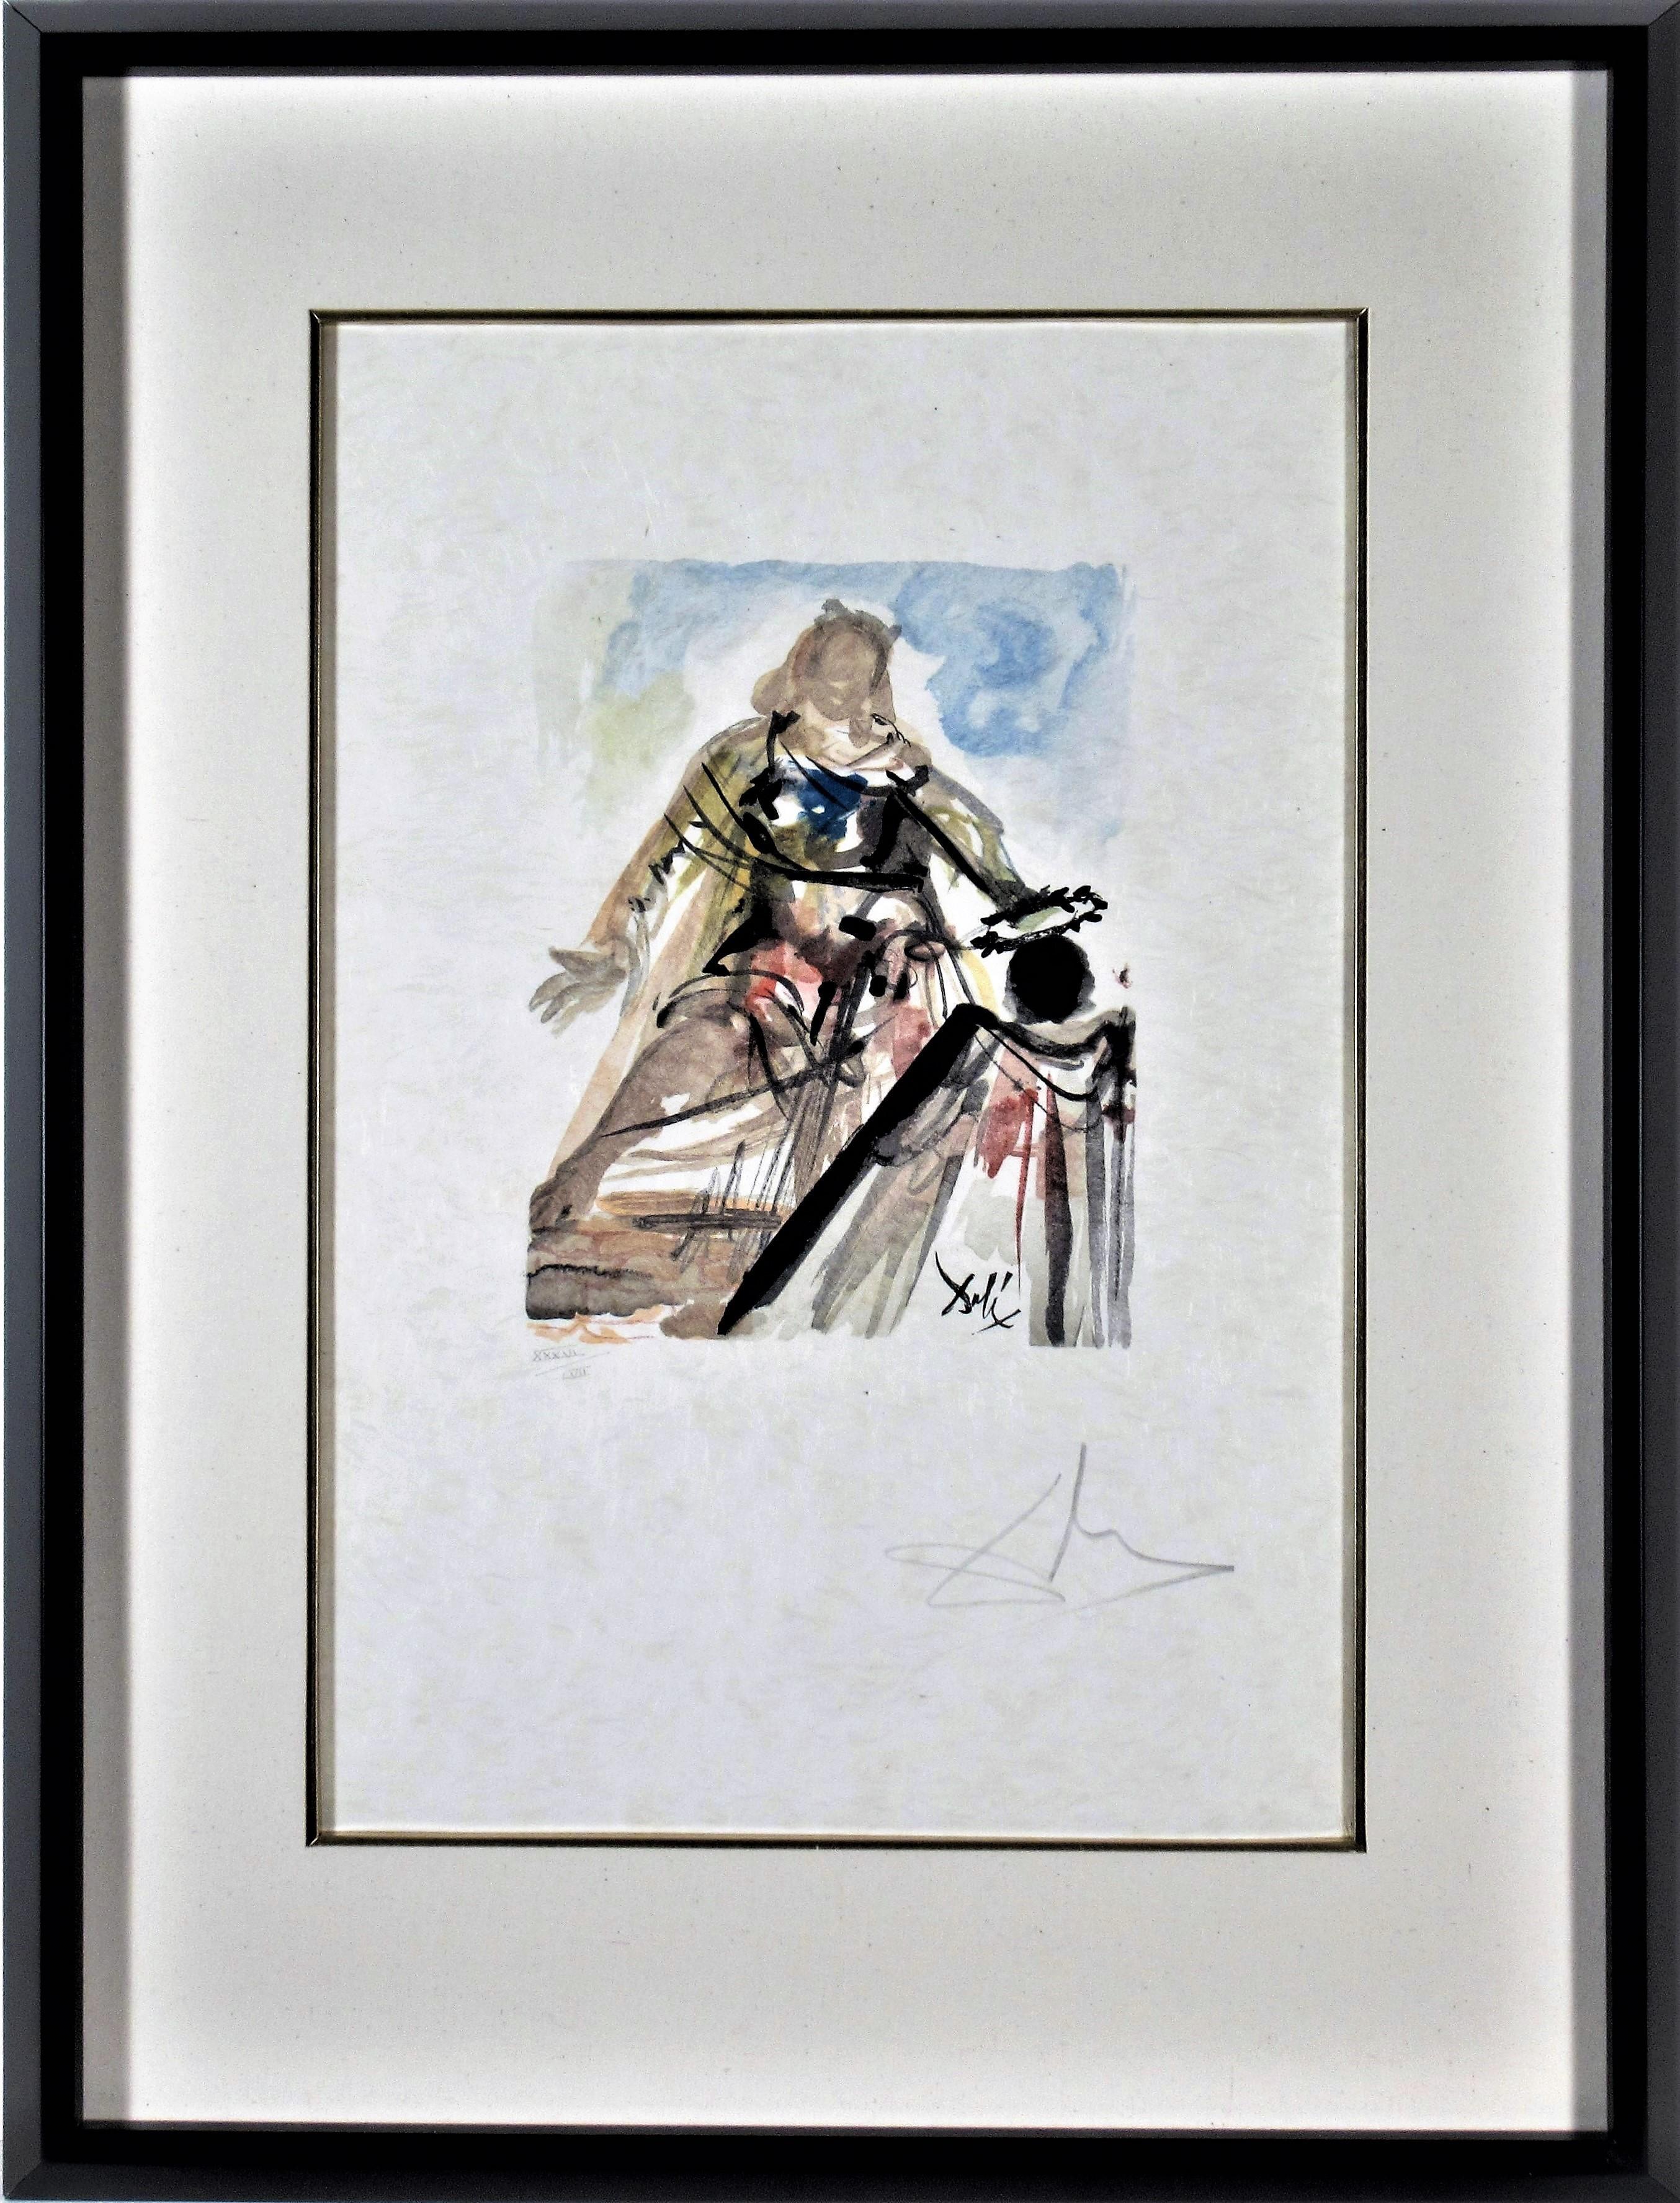 Salvador Dalí Print - "On Voit Cette Reine" from the suite "lArt d'Aimer d'Ovide 